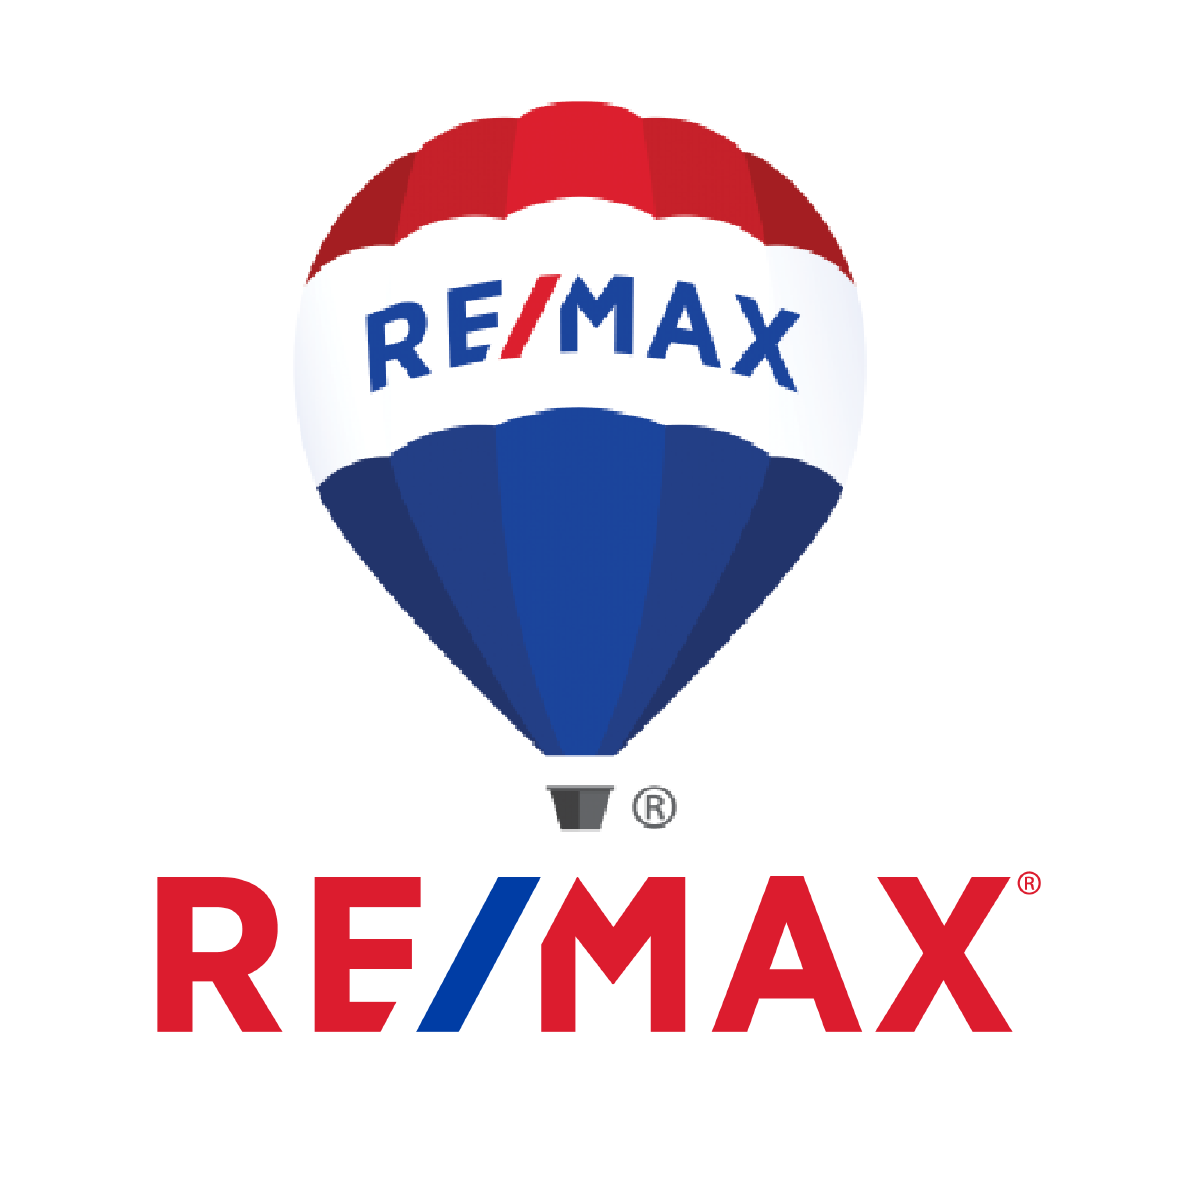 Remax Company